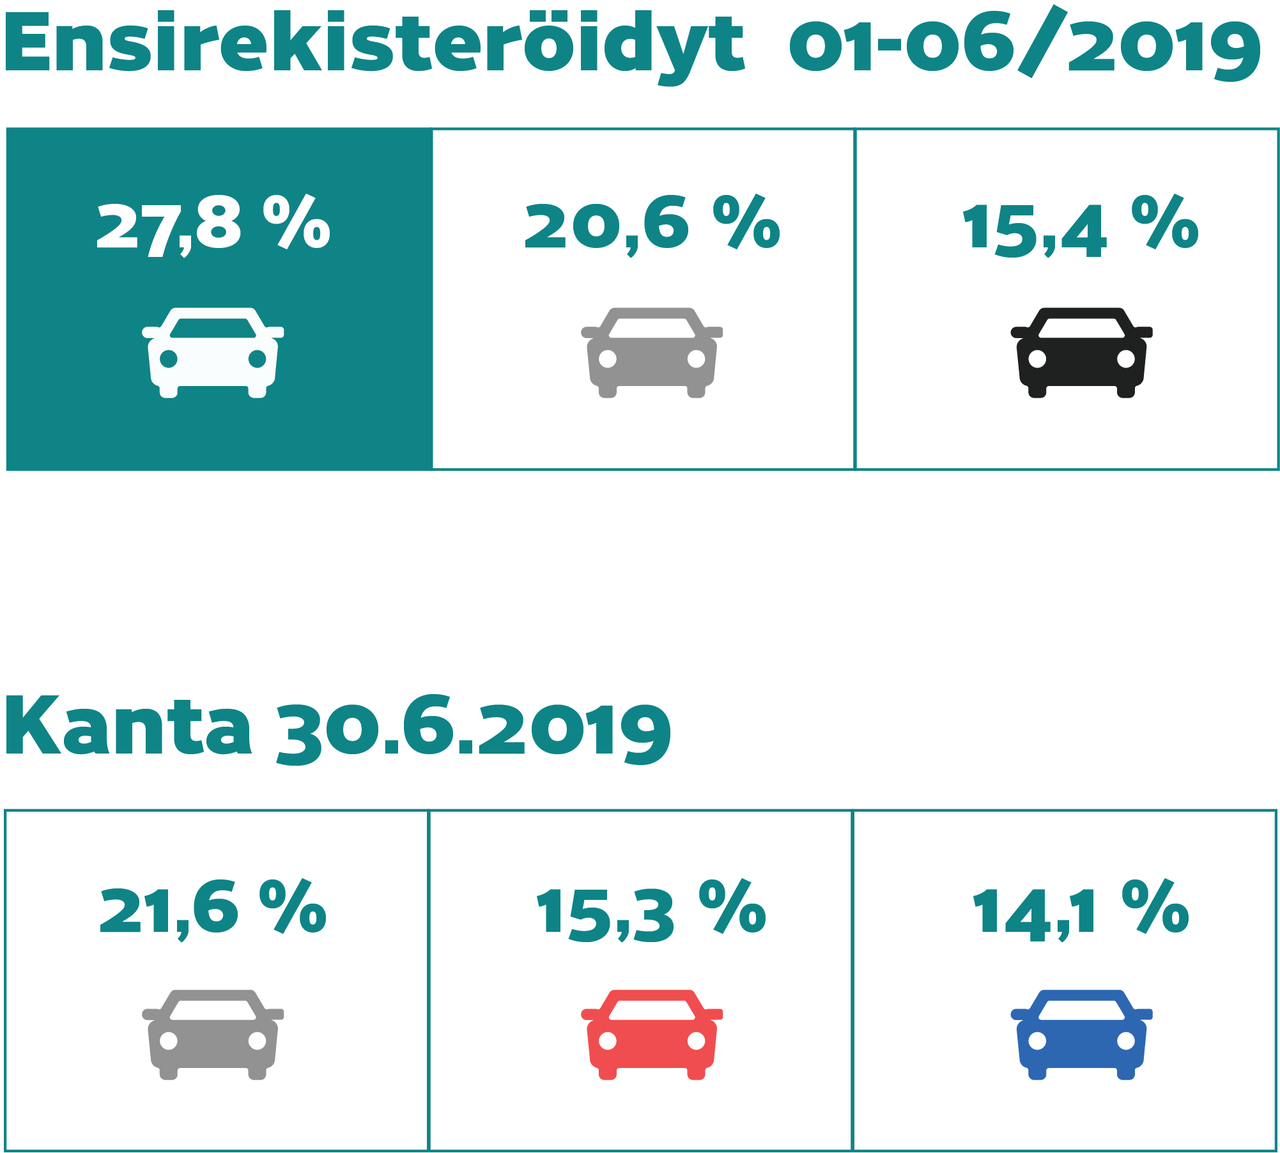 Ensirekisteröityjen autojen värit: 01-06/2019 valkoinen 27,8%, harmaa 20,6% ja musta 15,4%. Kanta 30.6.2019 harmaa 21,6%, punainen 15,3% ja sininen 14,1%.